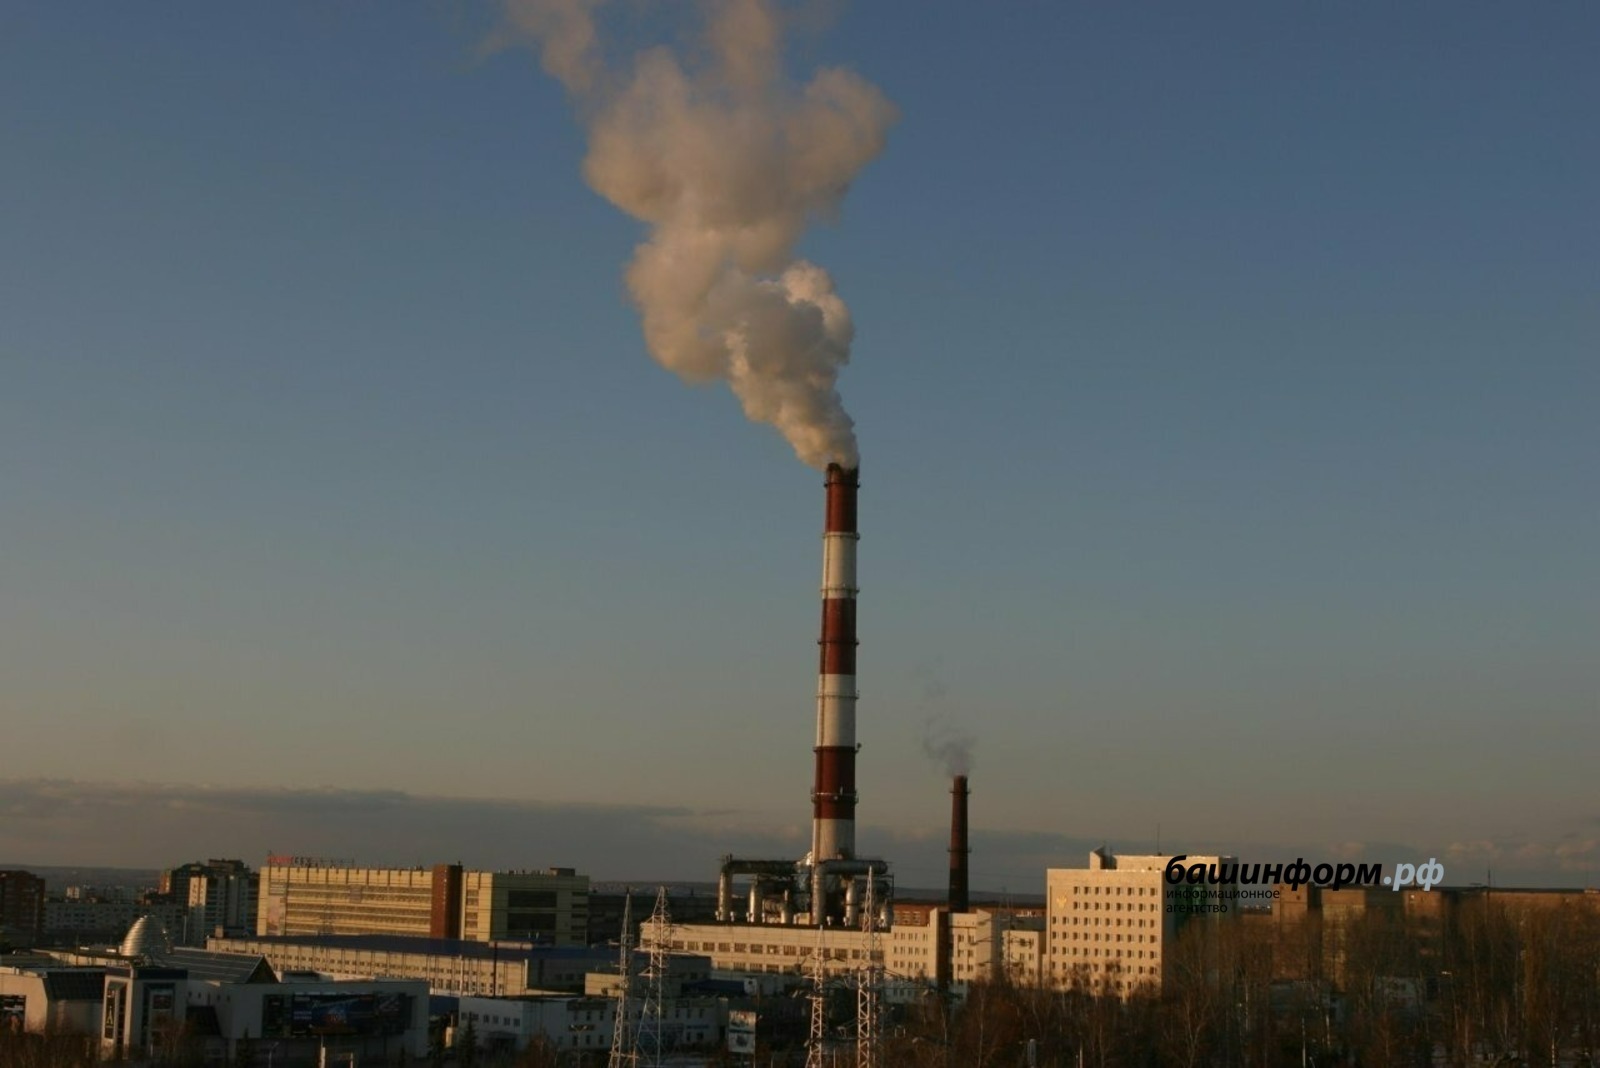 БСК уменьшила объем выбросов в атмосферу на 217 тонн в Башкирии